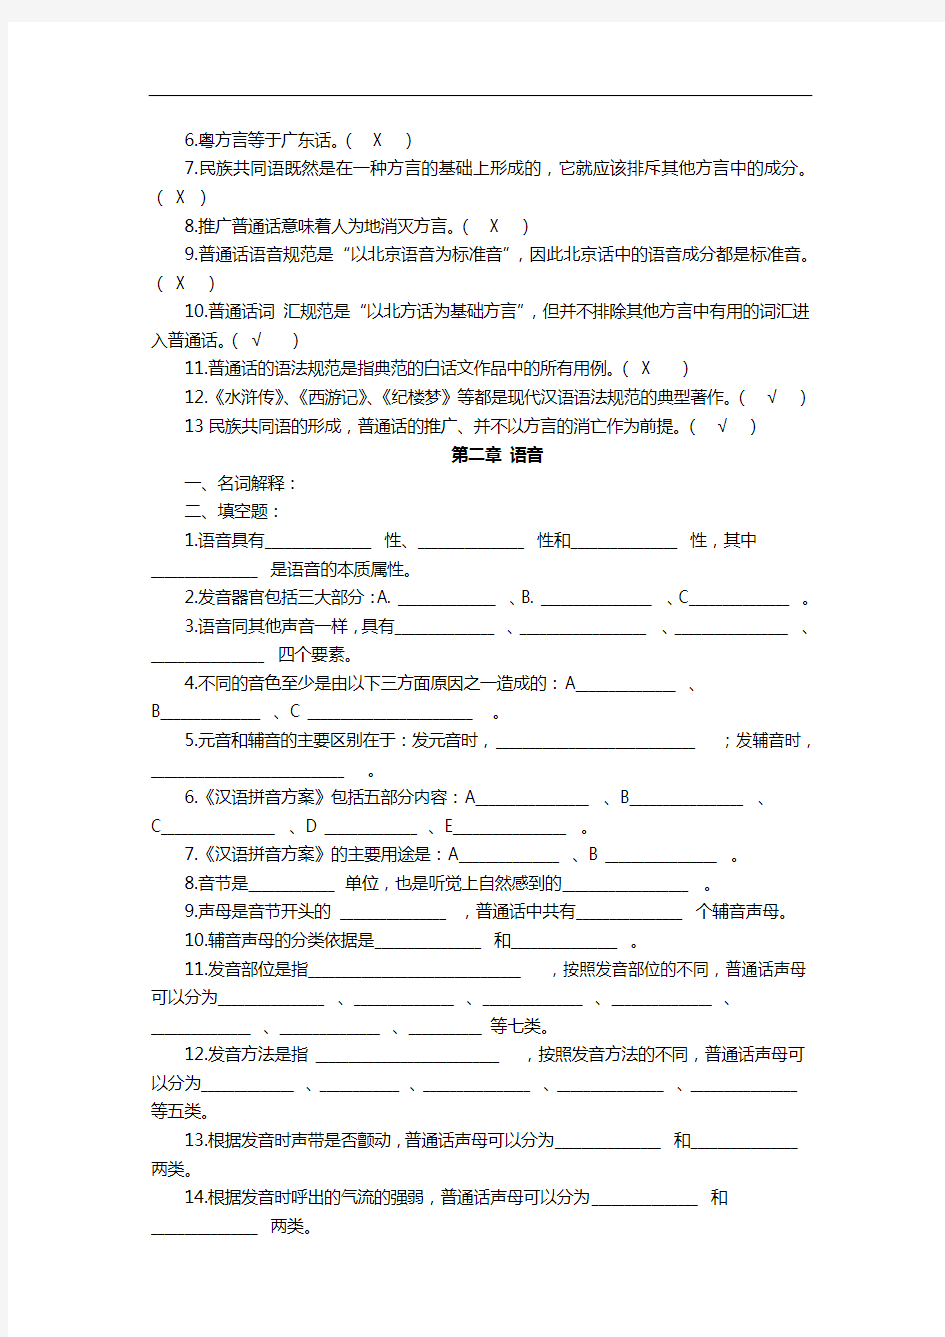 现代汉语试题库完整整理版讲解